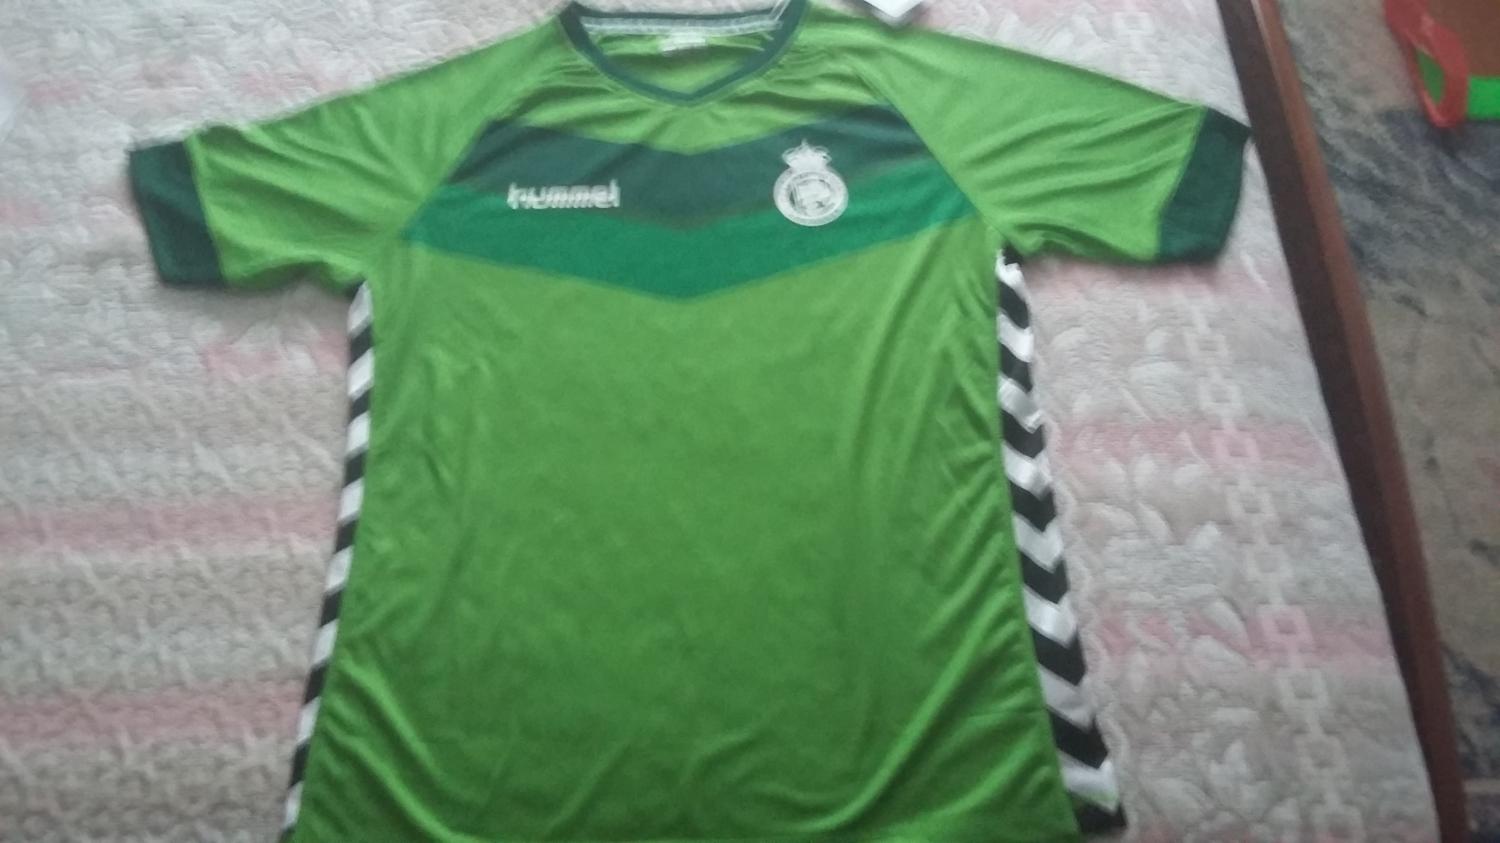 Llevando Delegación Residente Racing Santander Visitante Camiseta de Fútbol 2015 - 2016.